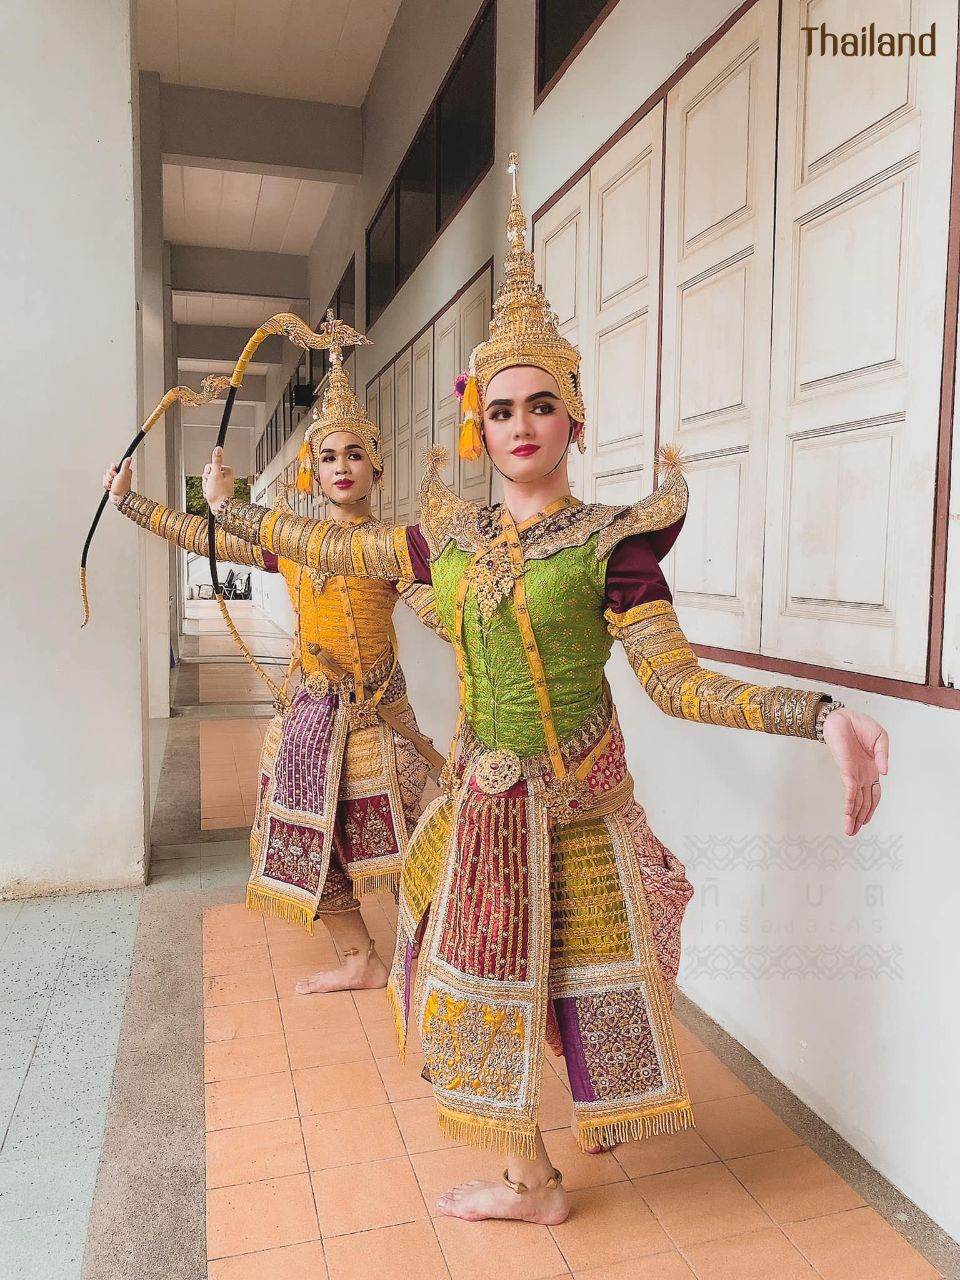 THAILAND 🇹🇭 | Khon masked dance drama in Thailand